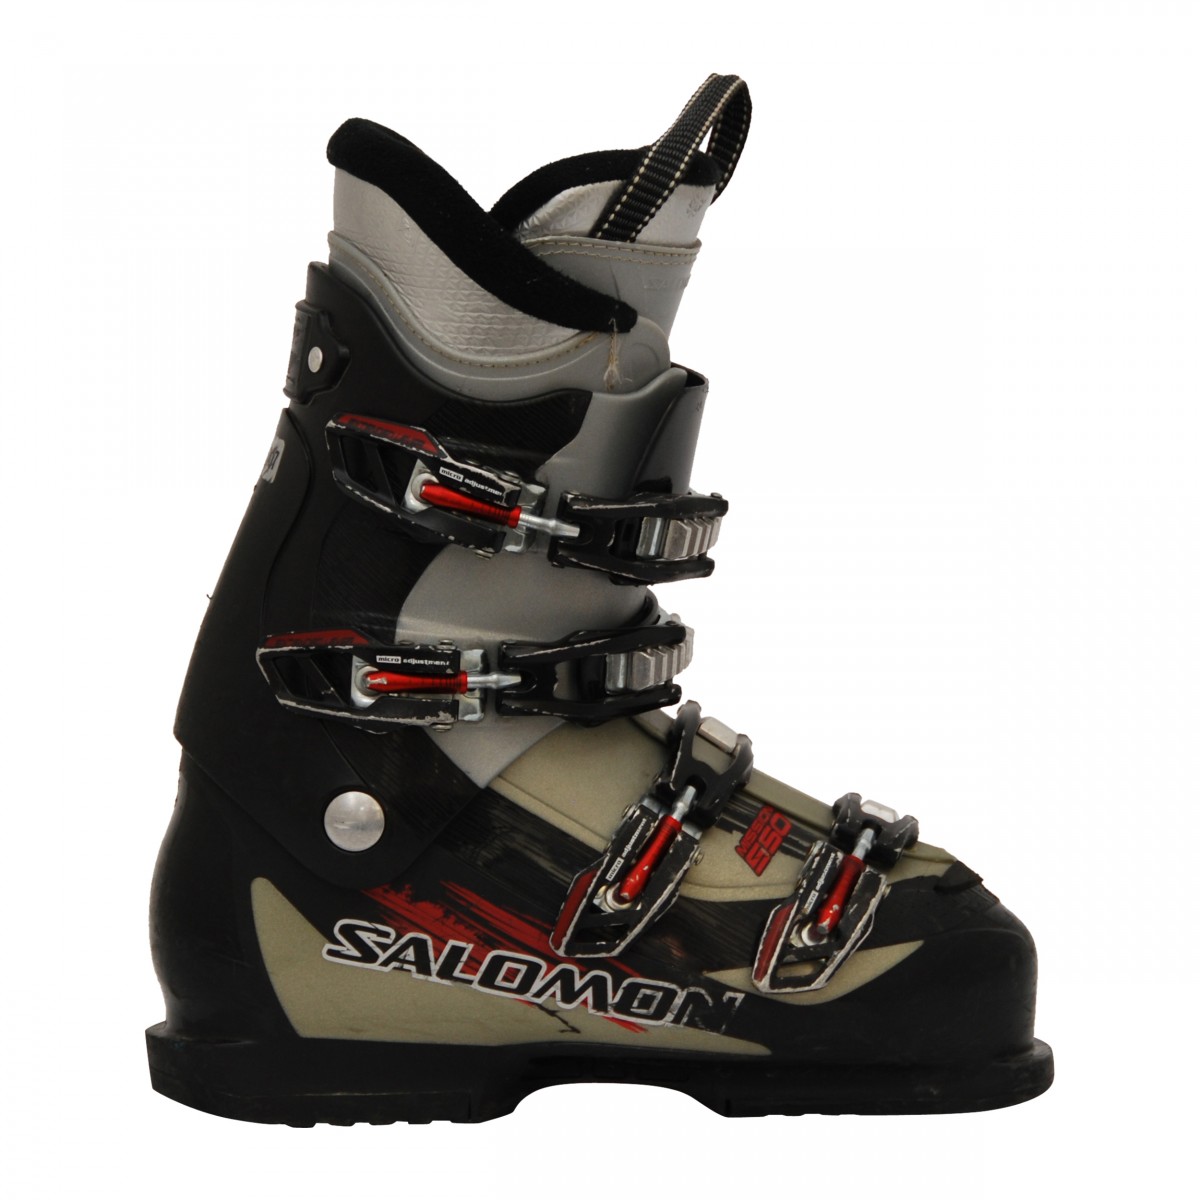 autómata Recomendado sostén Chaussure de ski Occasion Salomon mission 550 noir/gris